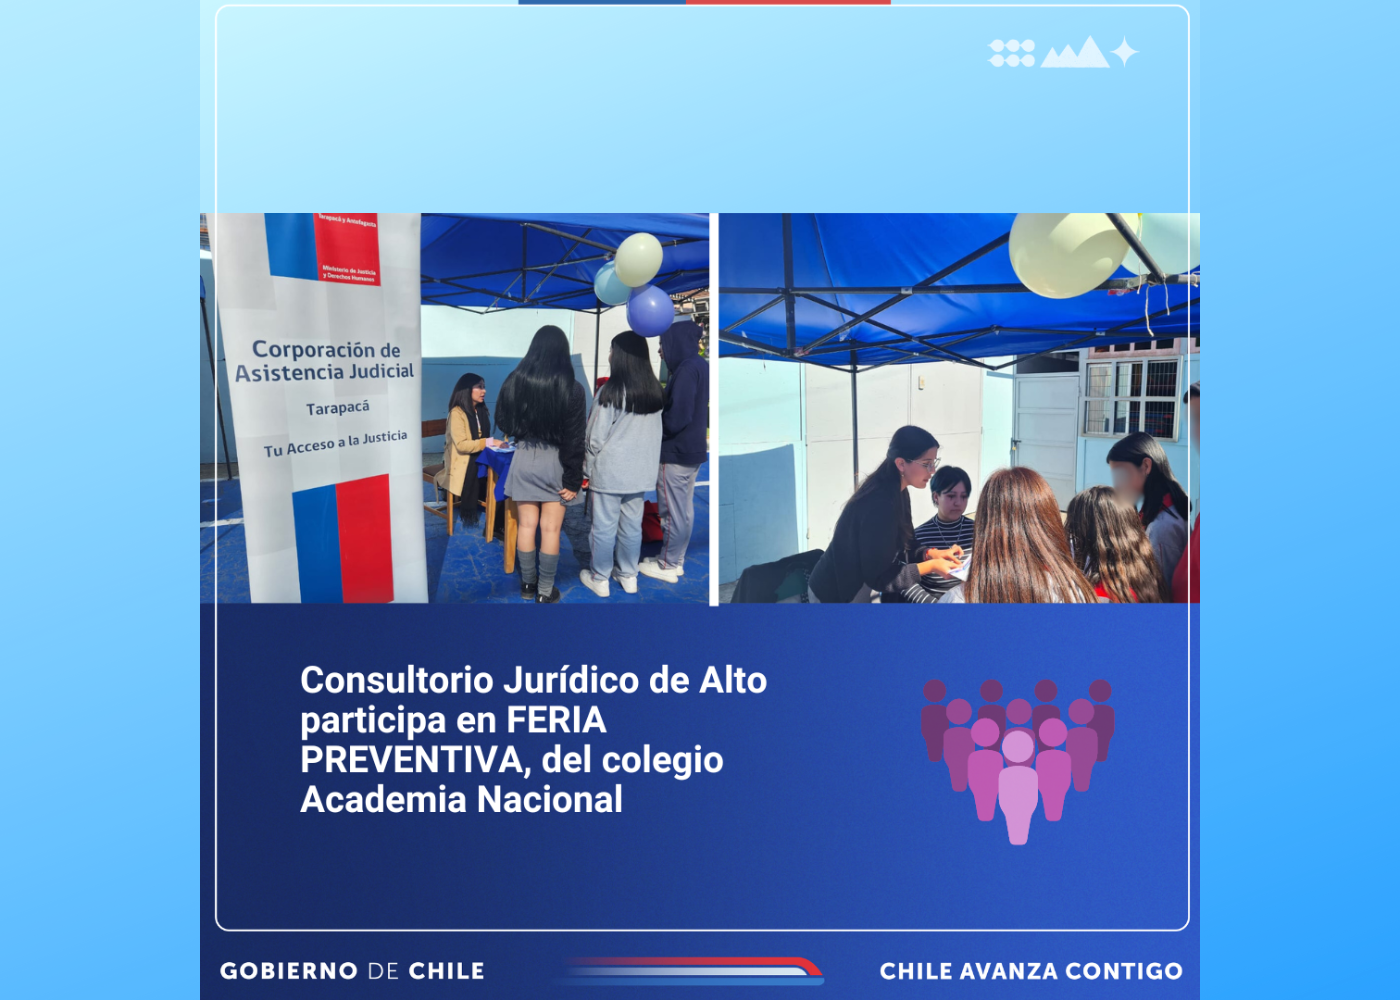 Consultorio Jurídico de Alto Hospicio participa en FERIA PREVENTIVA del colegio Academia Nacional